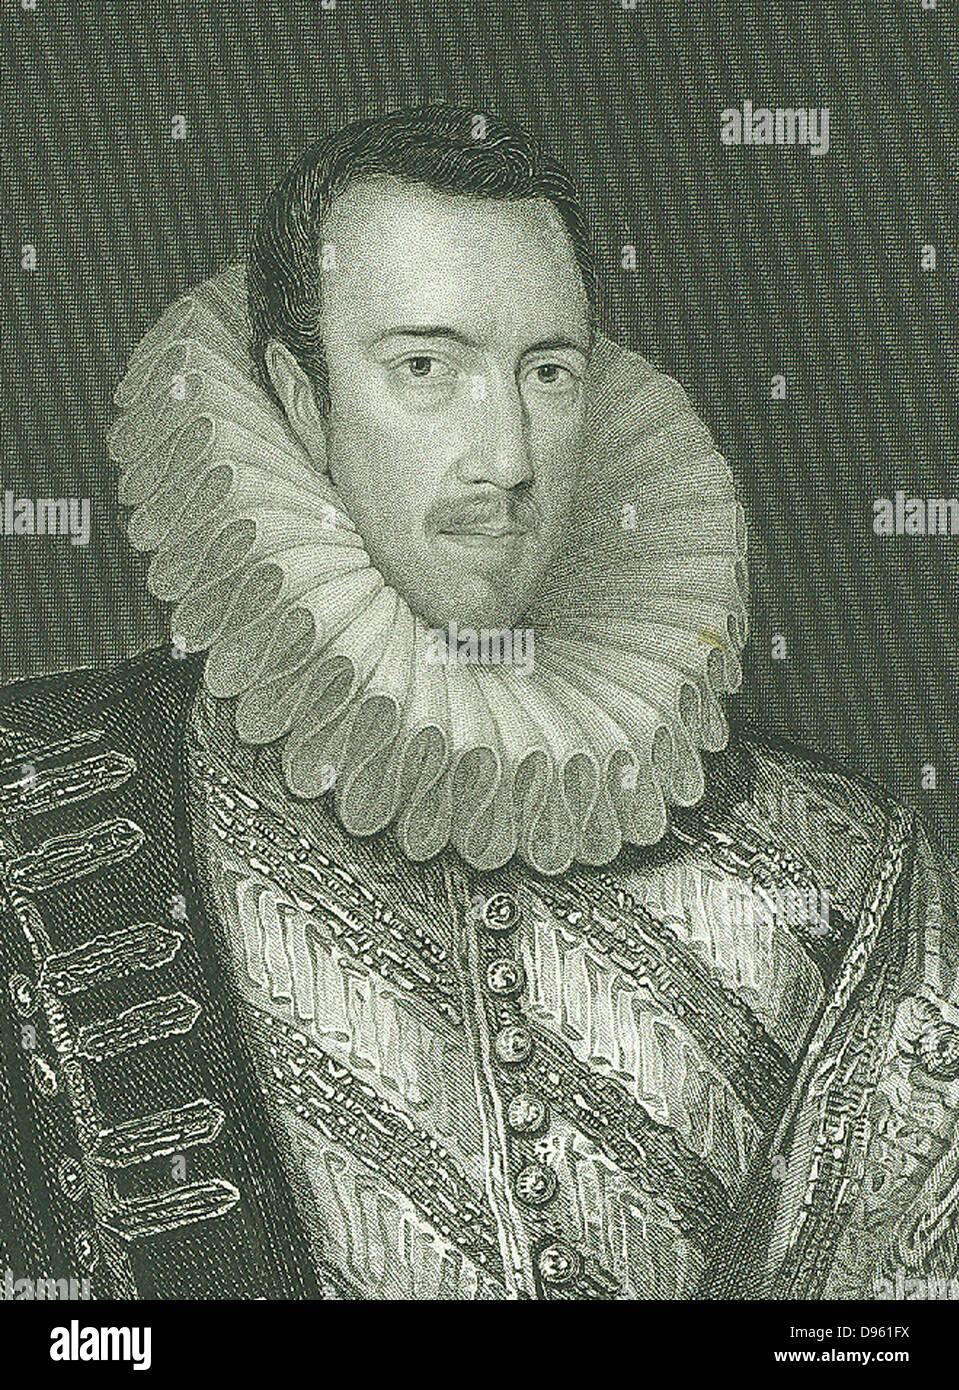 Philip Howard, comte d'Arundel (1557-1595) Anglais noble. Le Catholicisme romain a fait profession en 1584, a été condamné et emprisonné et est mort dans la Tour de Londres. Après gravure portrait par Zucchero. Banque D'Images